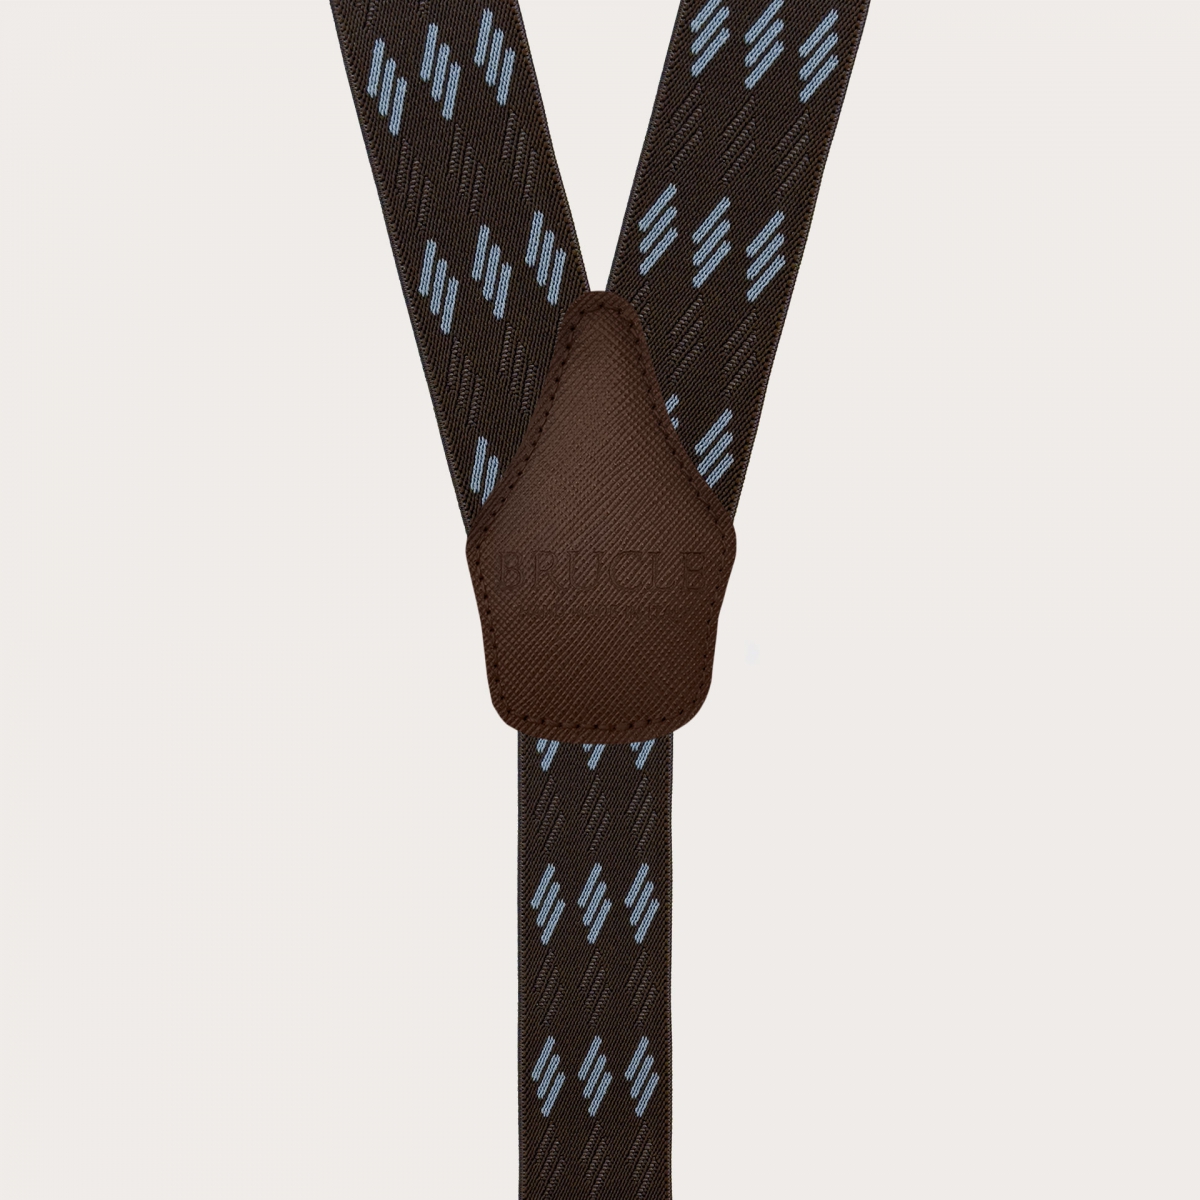 Braune elastische Hosenträger mit blauen Streifen für Knöpfe oder Clips